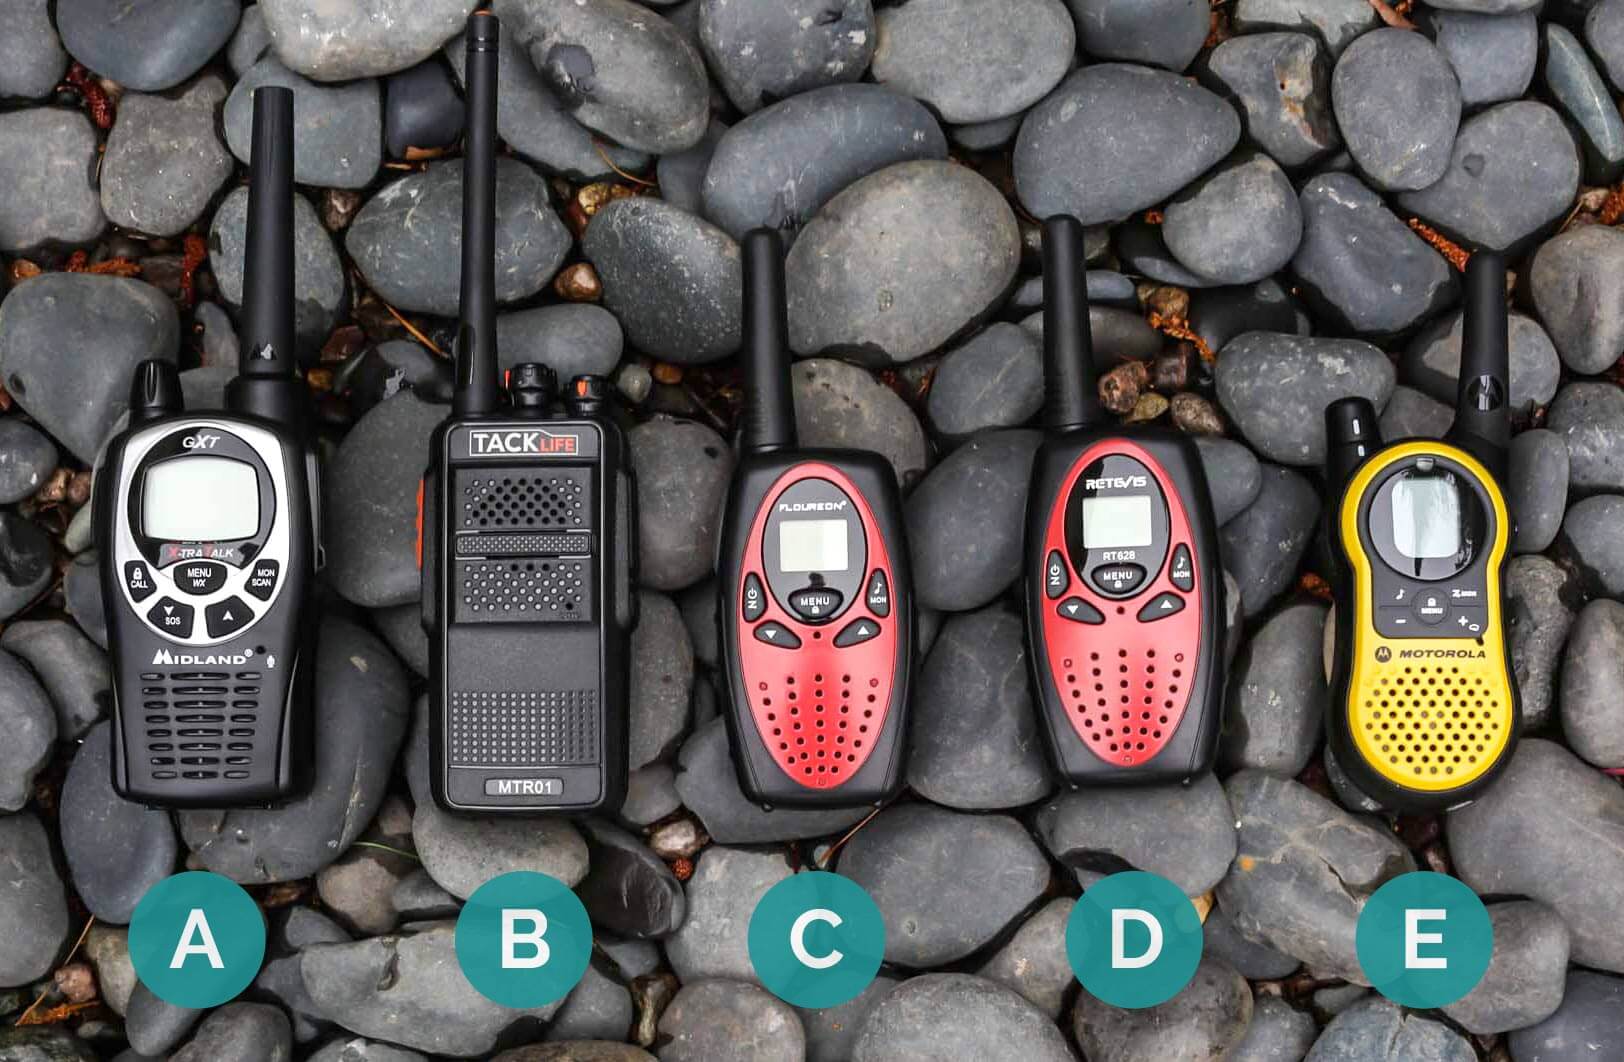 Lineup of walkie talkies 